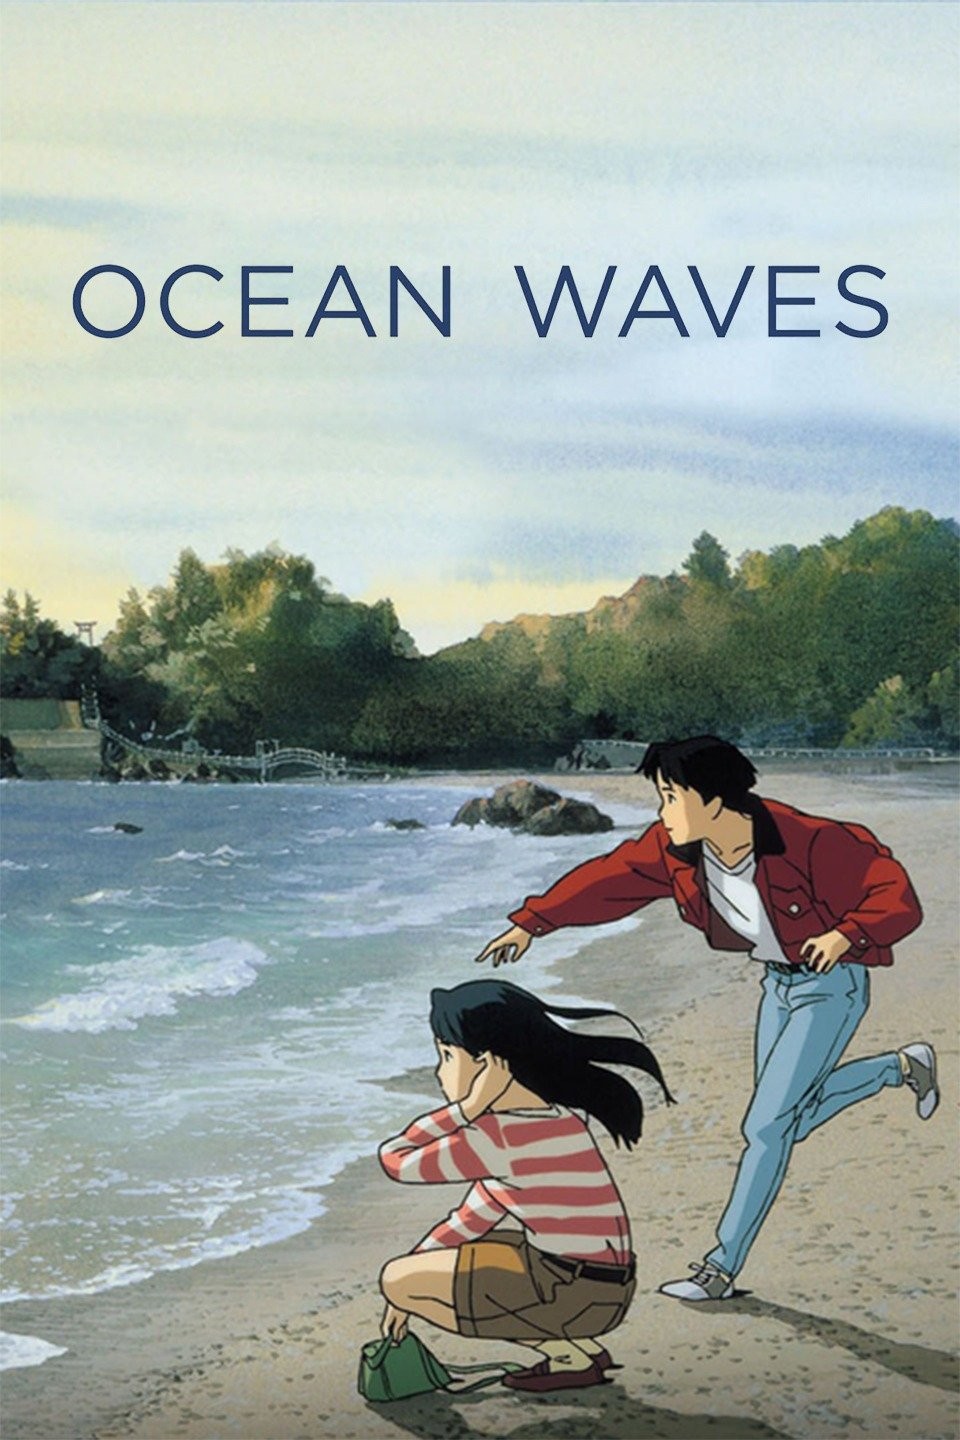 OCEAN WAVES  Studio Ghiblis Most Underrated Movie Film Analysis   YouTube